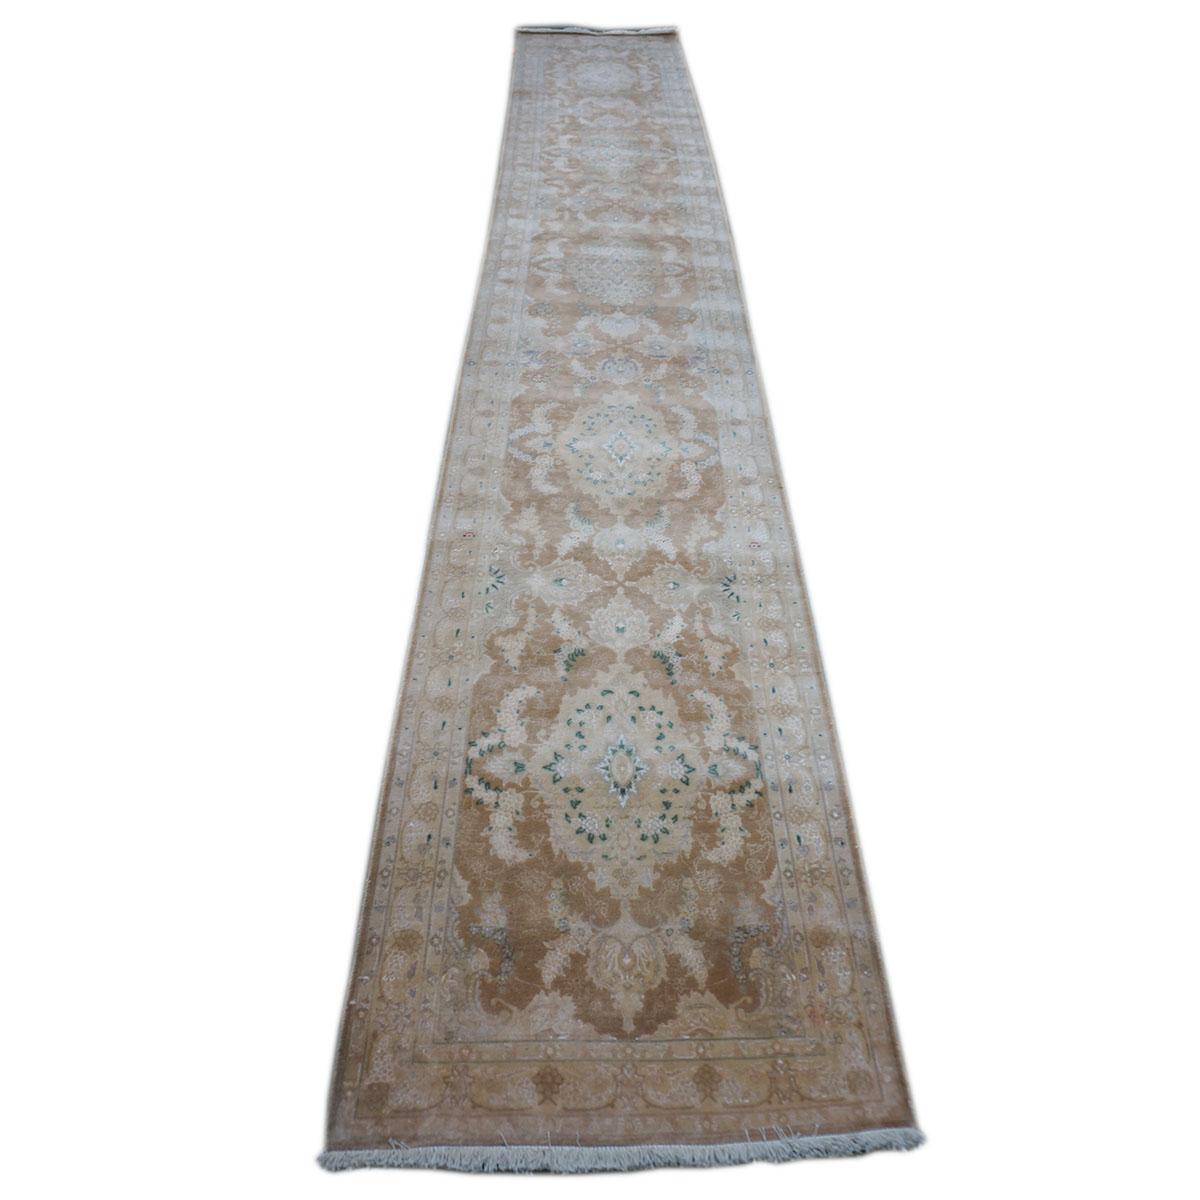 Ashly Fine Rugs présente un tapis Vintage Persian Tabriz Hall Runner Rug. Tabriz est une ville du nord de l'Iran moderne, célèbre depuis toujours pour la finesse et le savoir-faire de ses tapis faits main. Ce magnifique chemin de table a un fond